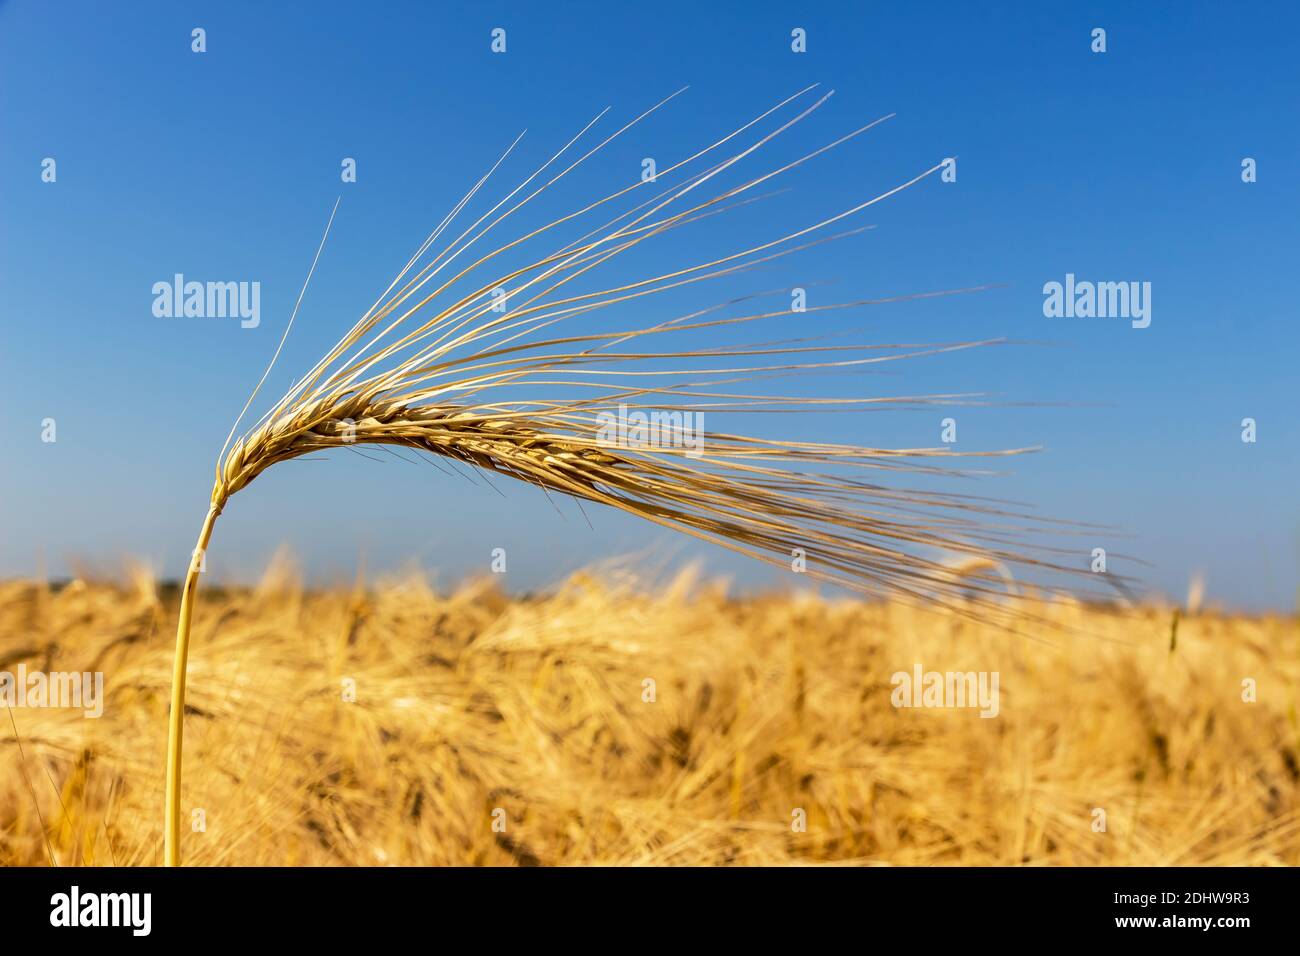 Ein Getreidefeld mit Gerste wartet auf die Ernte. Symbolfoto für Landwirtschaft und gesunde Ernährung, einzelne Ähre, blauer Himmel, Stock Photo